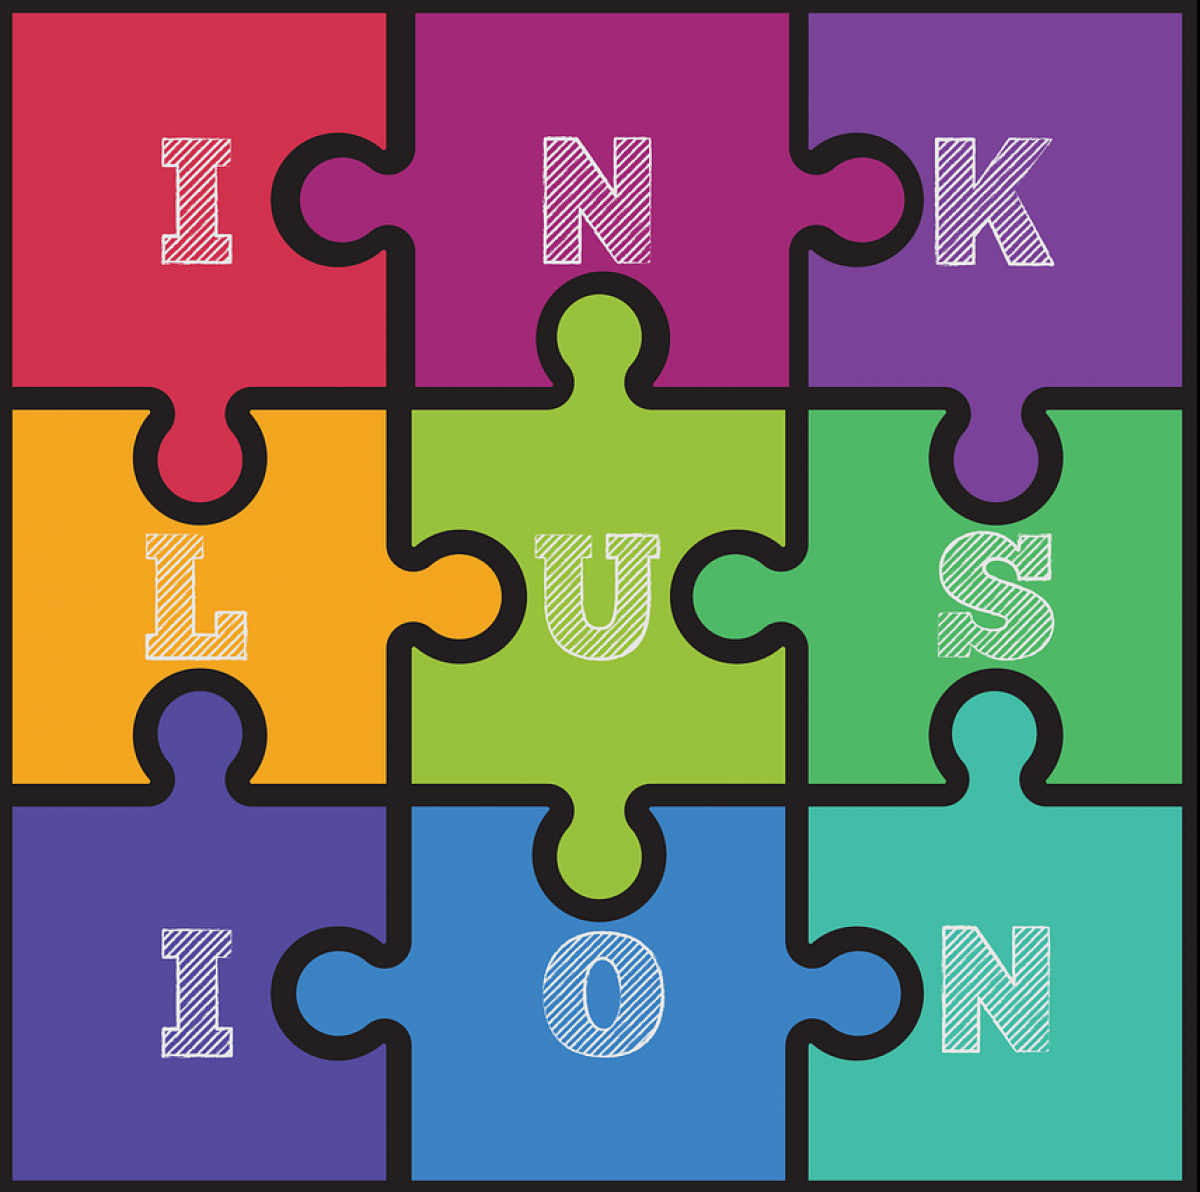 Illustration eines quadratischen Puzzles aus neun Puzzleteilen, die einzelnen Teile haben unterschiedliche Farben und je einen Buchstaben darauf. Zusammen ergibt sich das Wort 